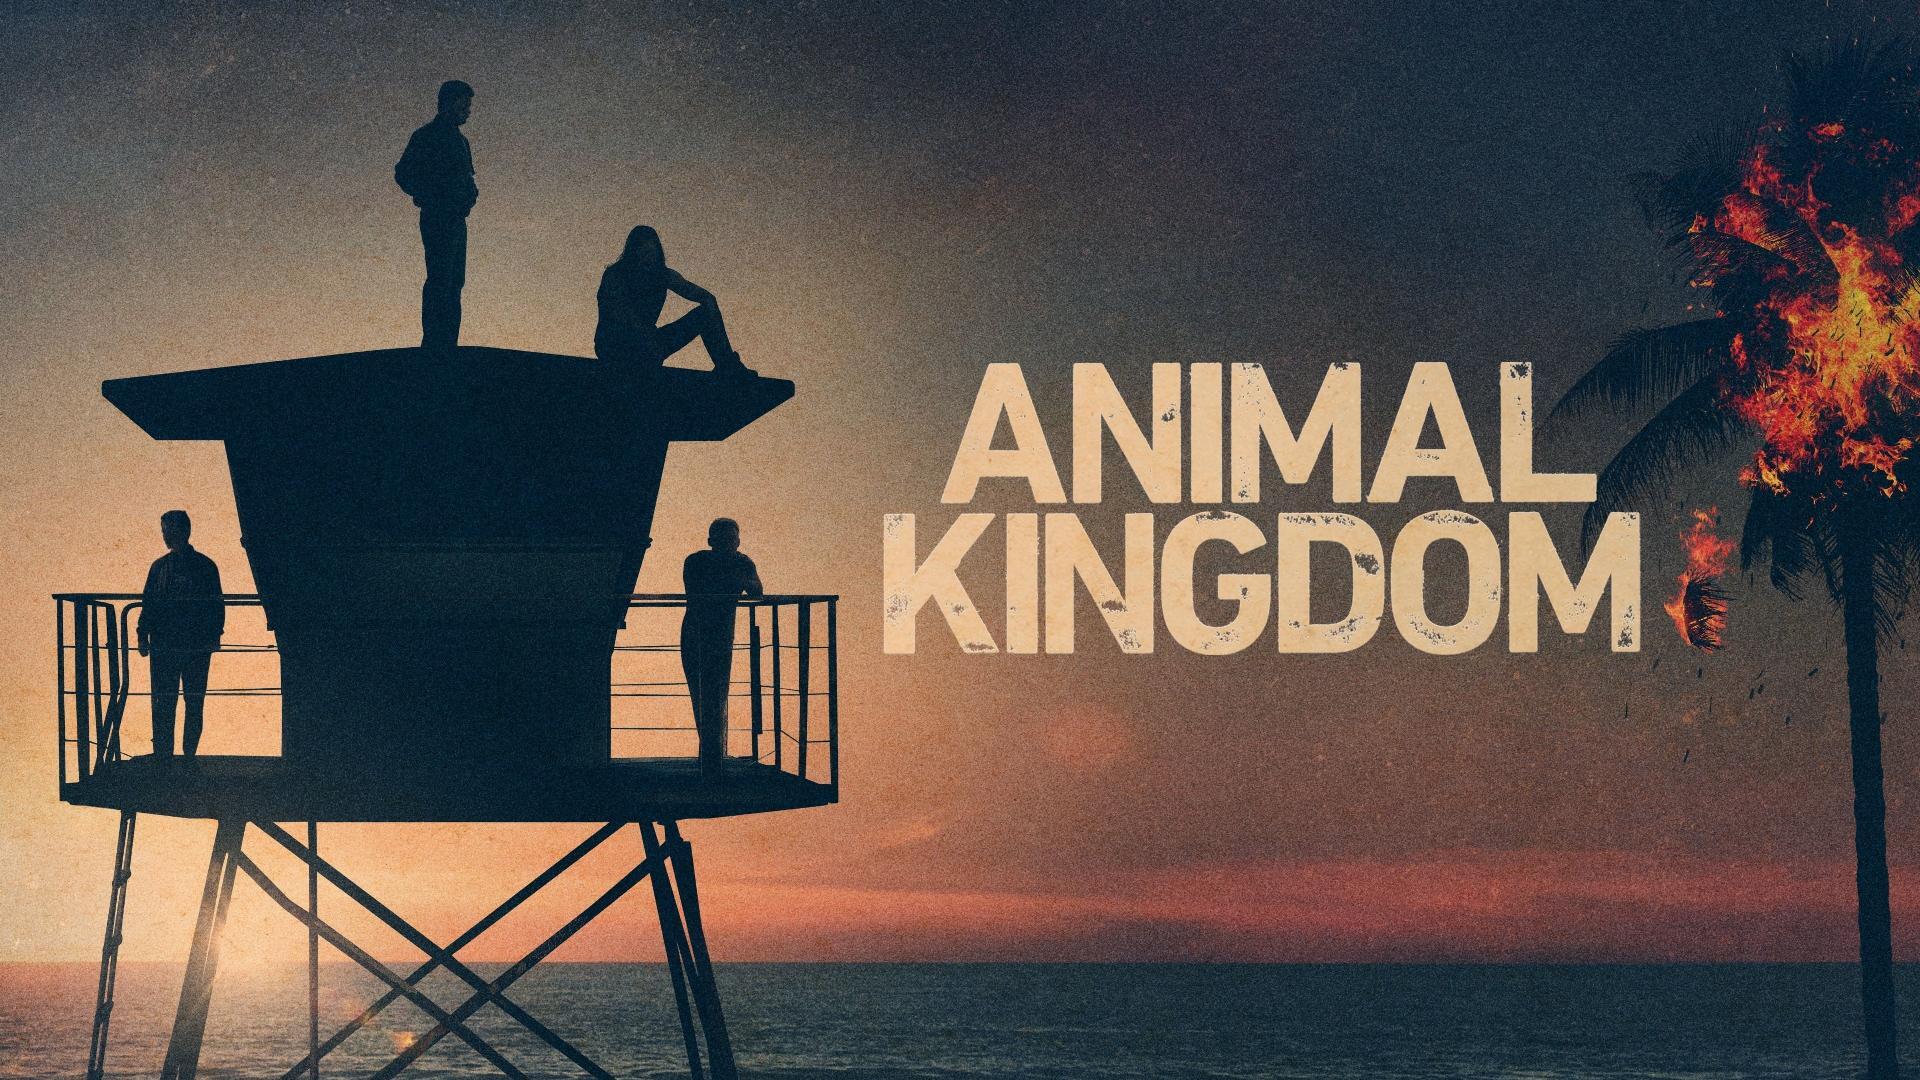 ცხოველთა სამეფო / Animal Kingdom